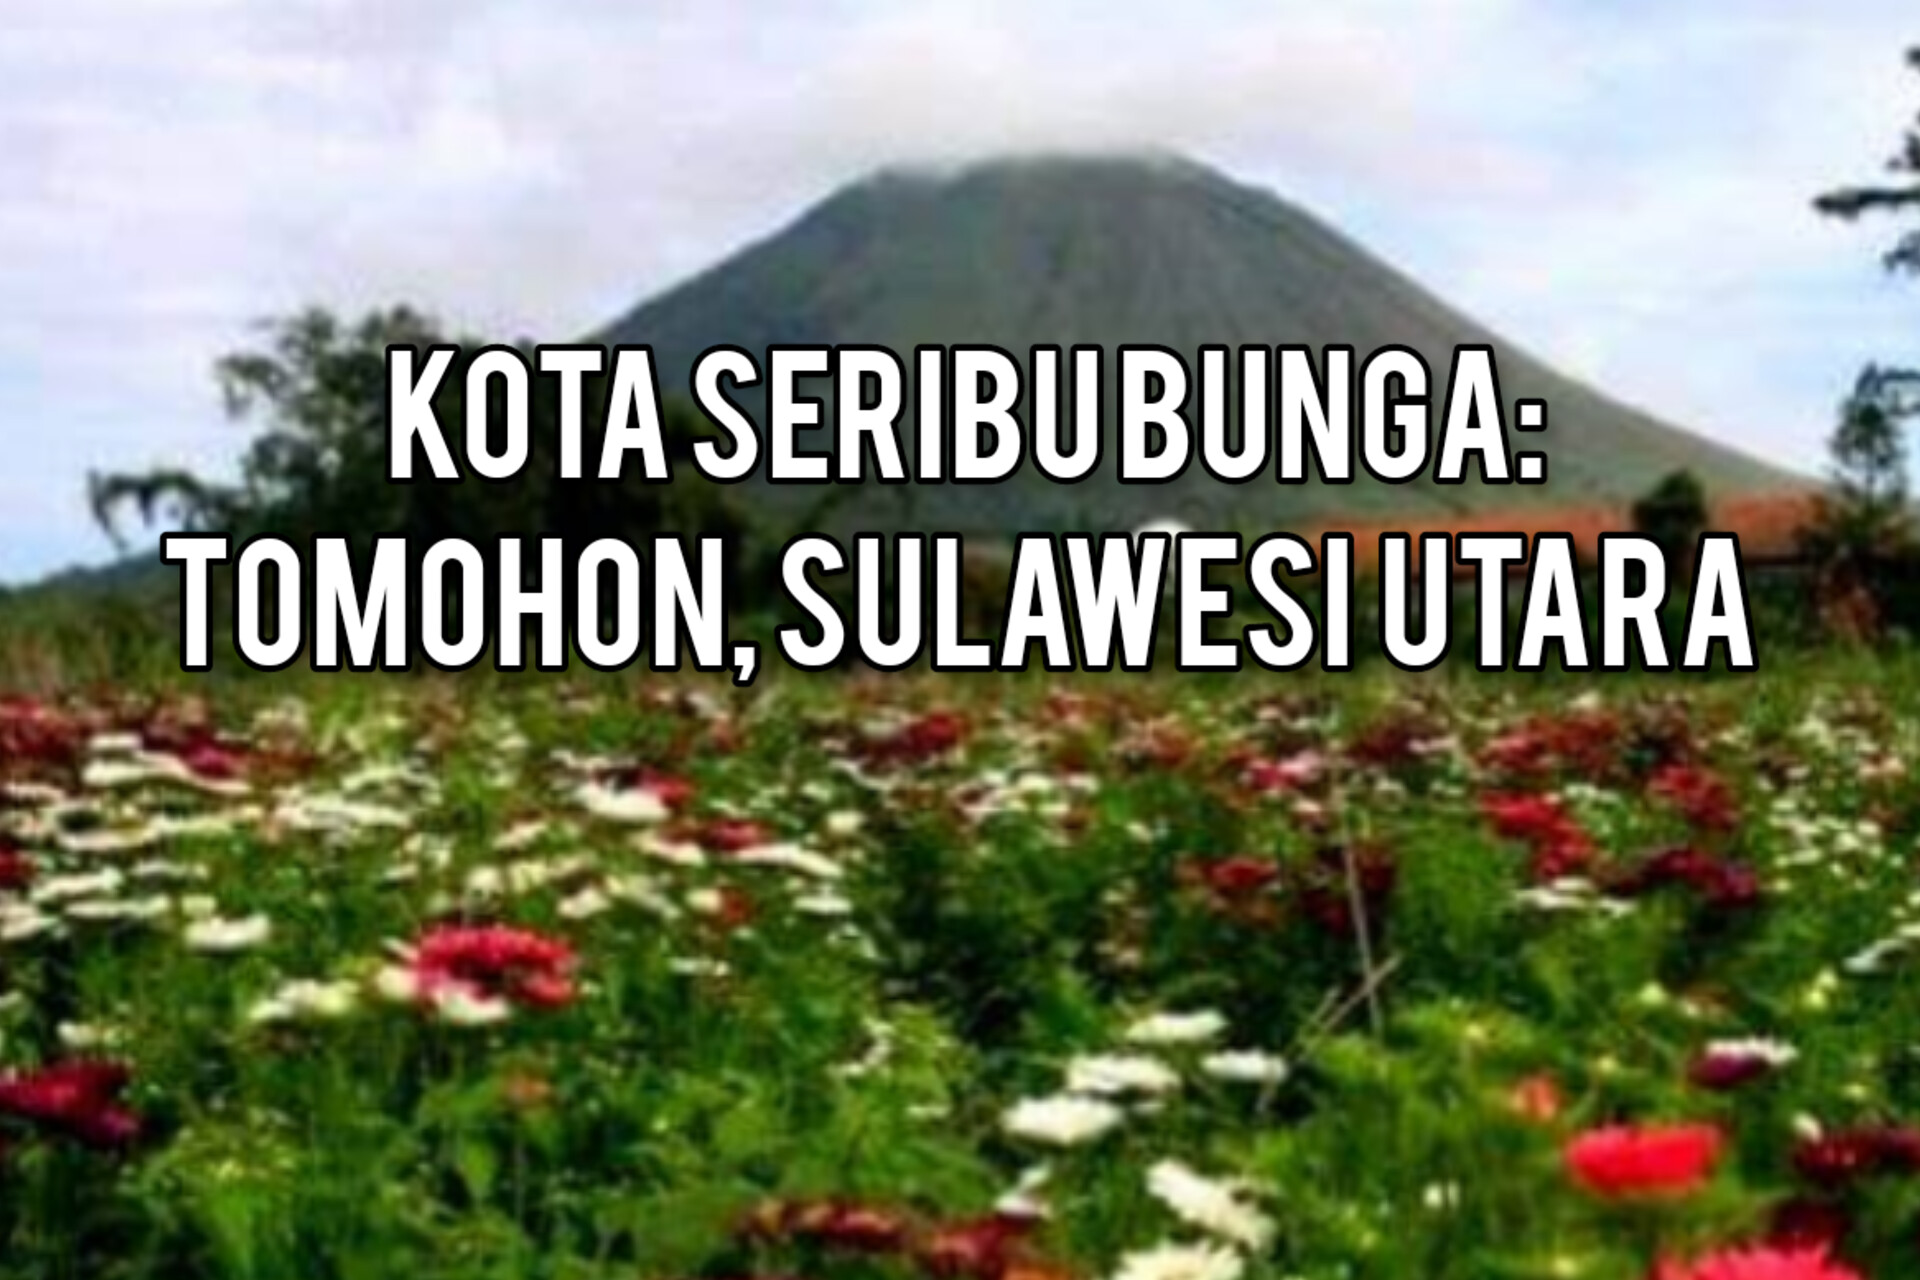 Pesona Warna-warni Kota Seribu Bunga: Tomohon, Sulawesi Utara yang Membuat Mata Terpesona